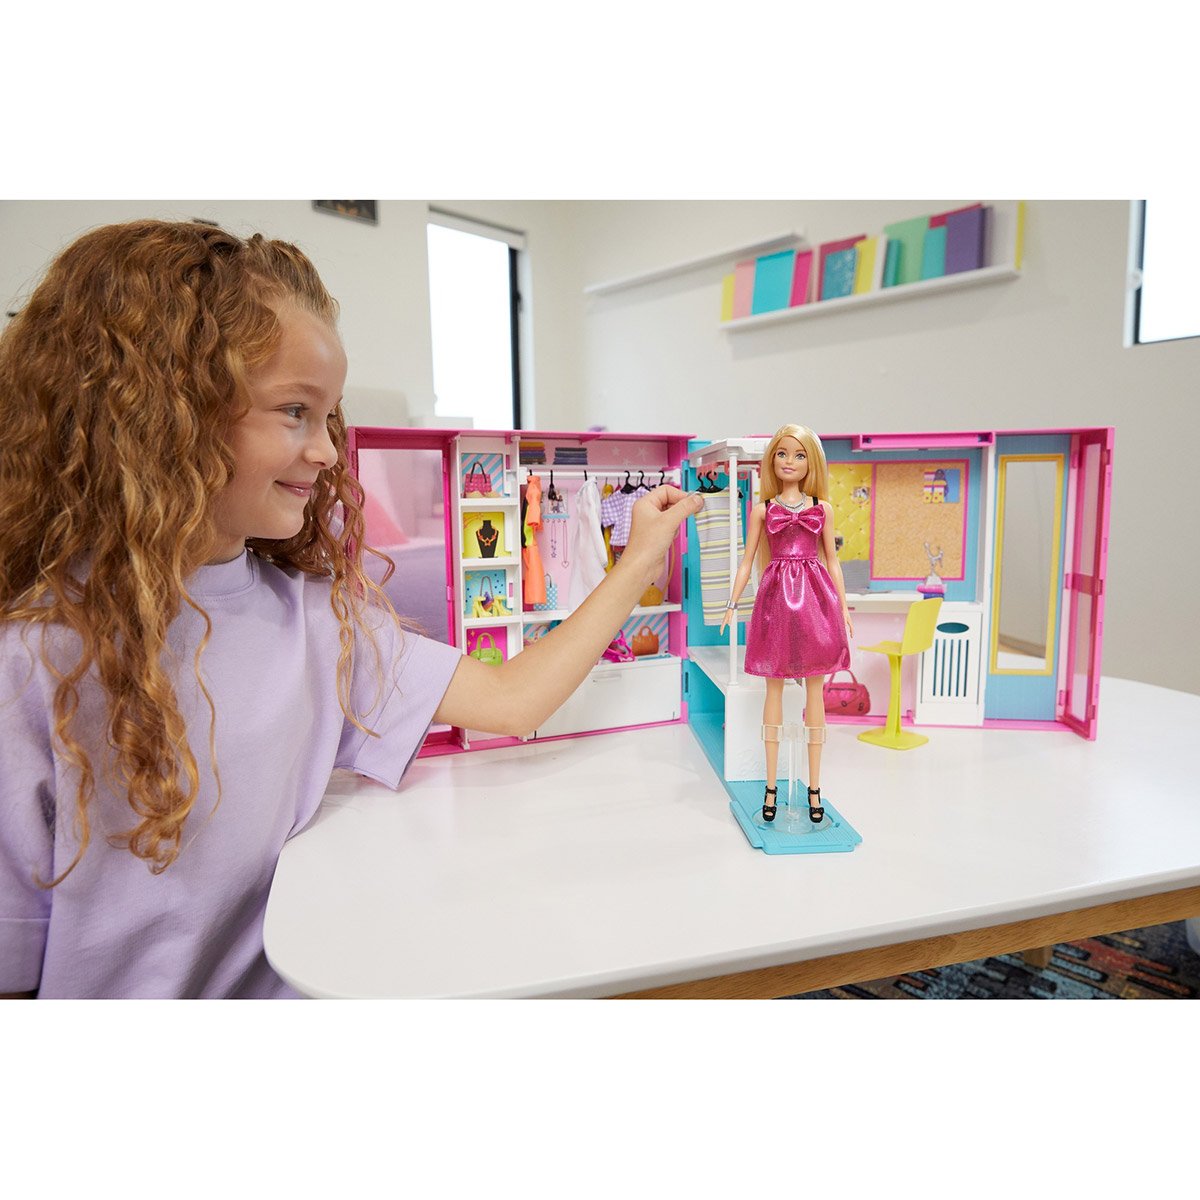 Poupée Barbie et Coffret Dressing Deluxe Mattel : King Jouet